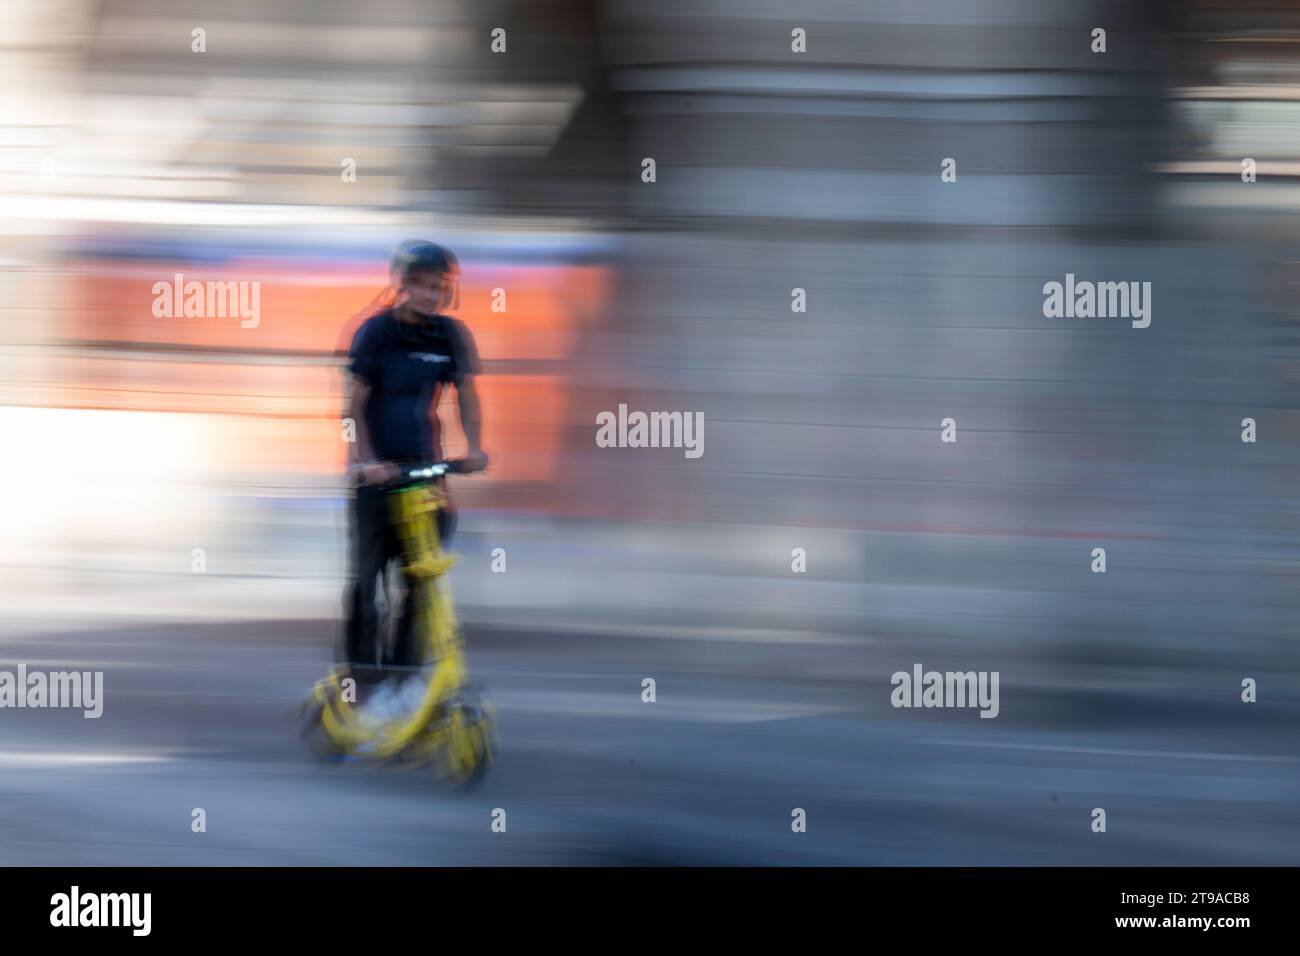 Geschwindigkeit, Bewegung und Radfahren. Verwendung von Kameraschwenken und niedriger Verschlusszeit, um einen Eindruck von Geschwindigkeit und Bewegung in einer städtischen Umgebung zu vermitteln Stockfoto